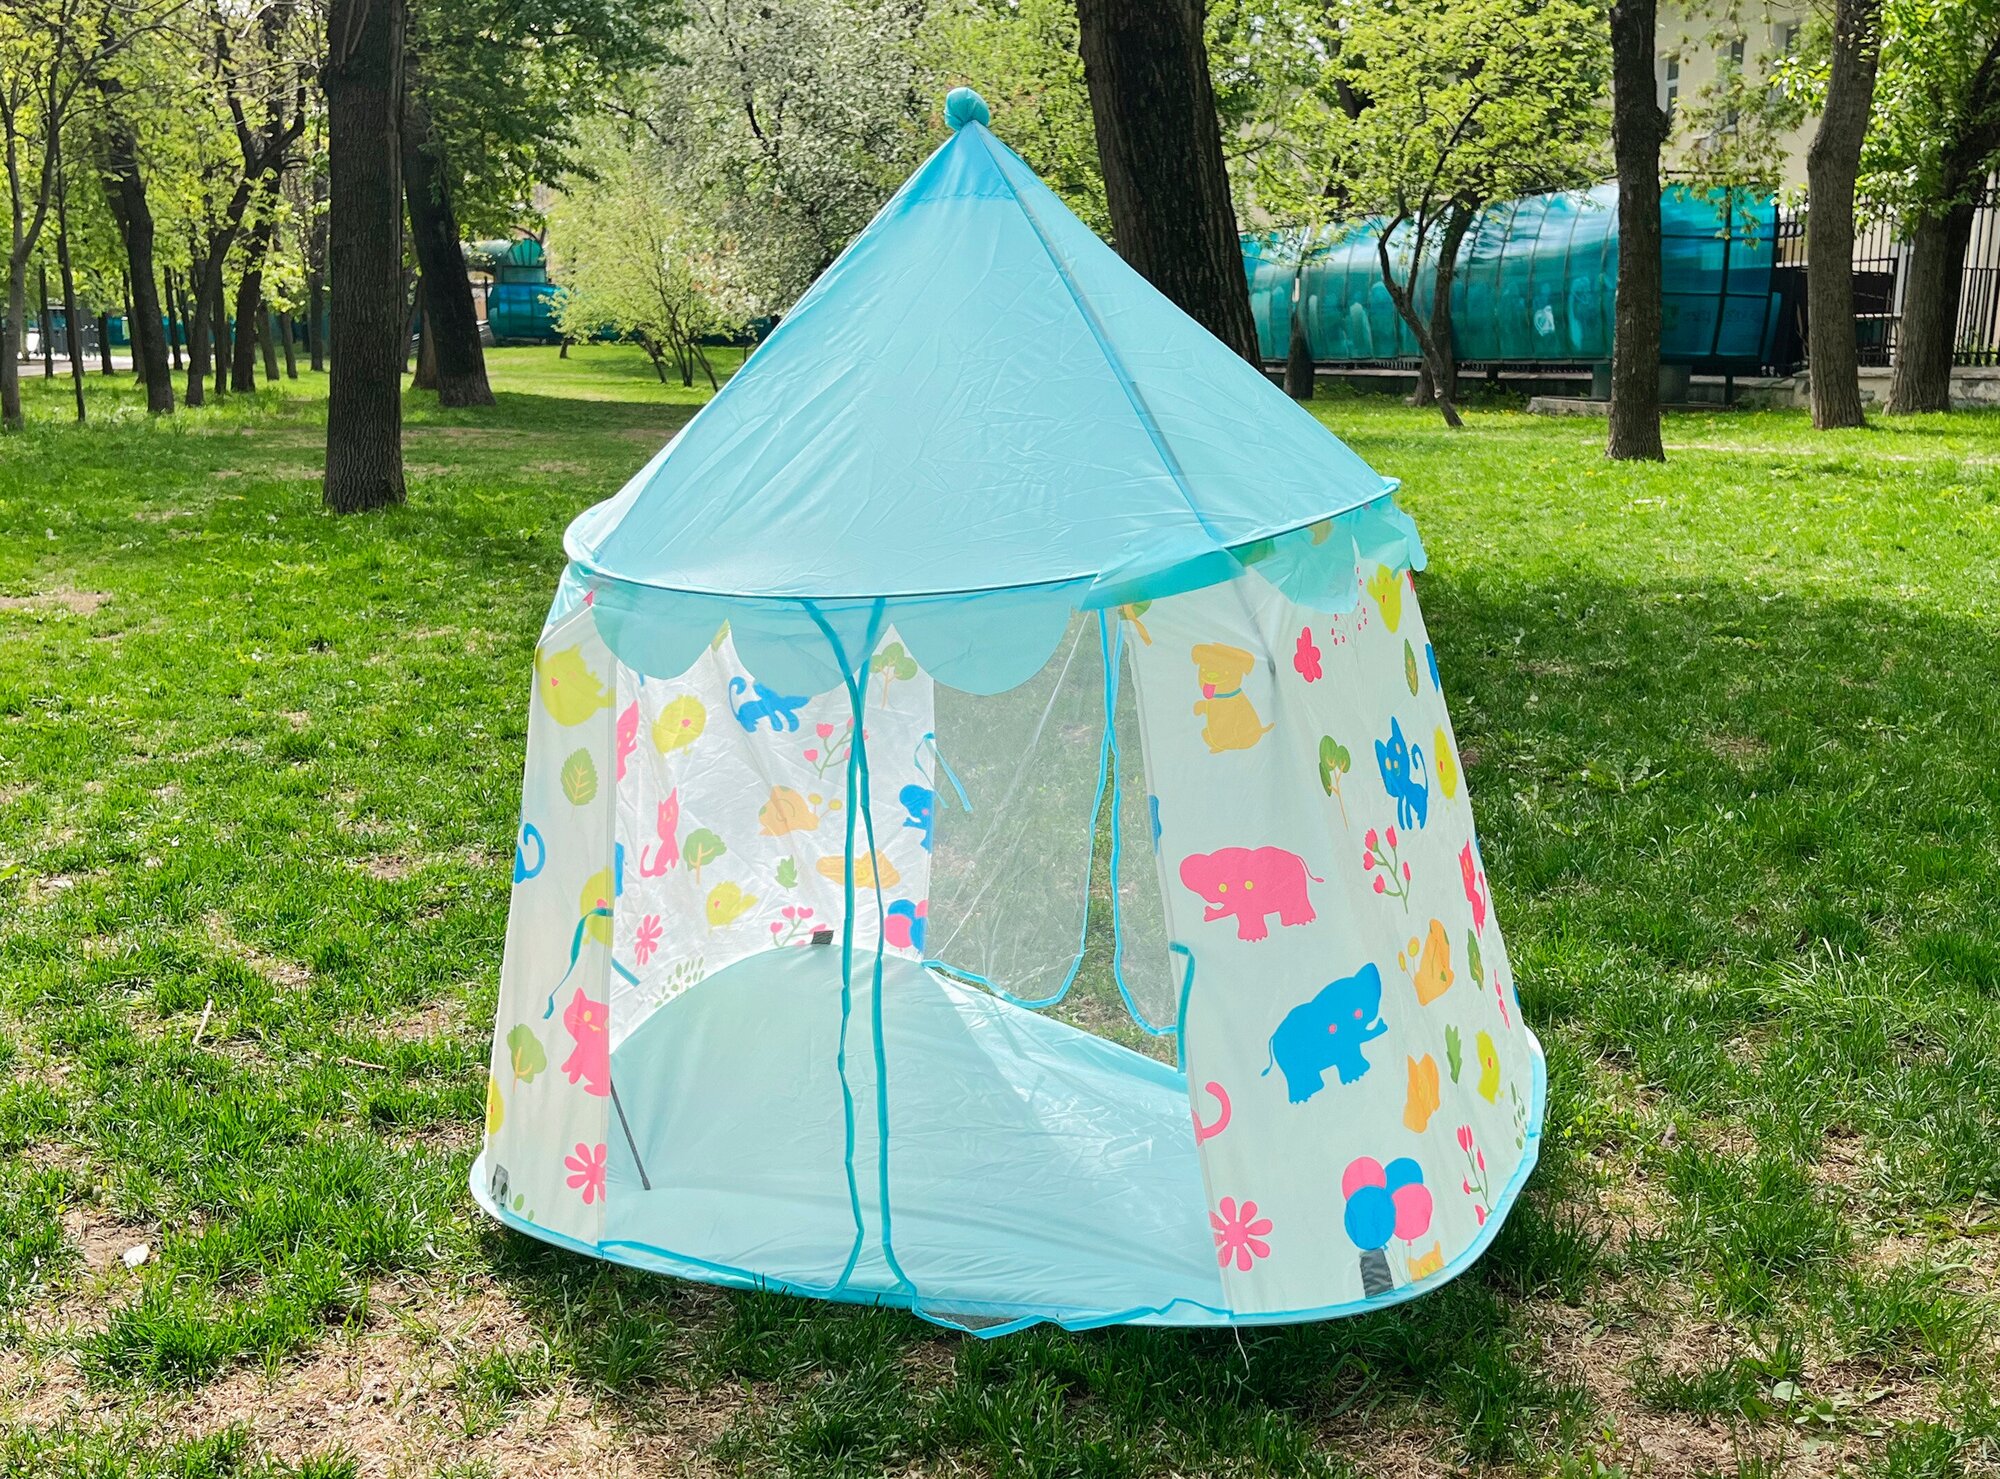 Детская игровая палатка "Шатер полянка" для дома, дачи детского сада, центра развития, голубая